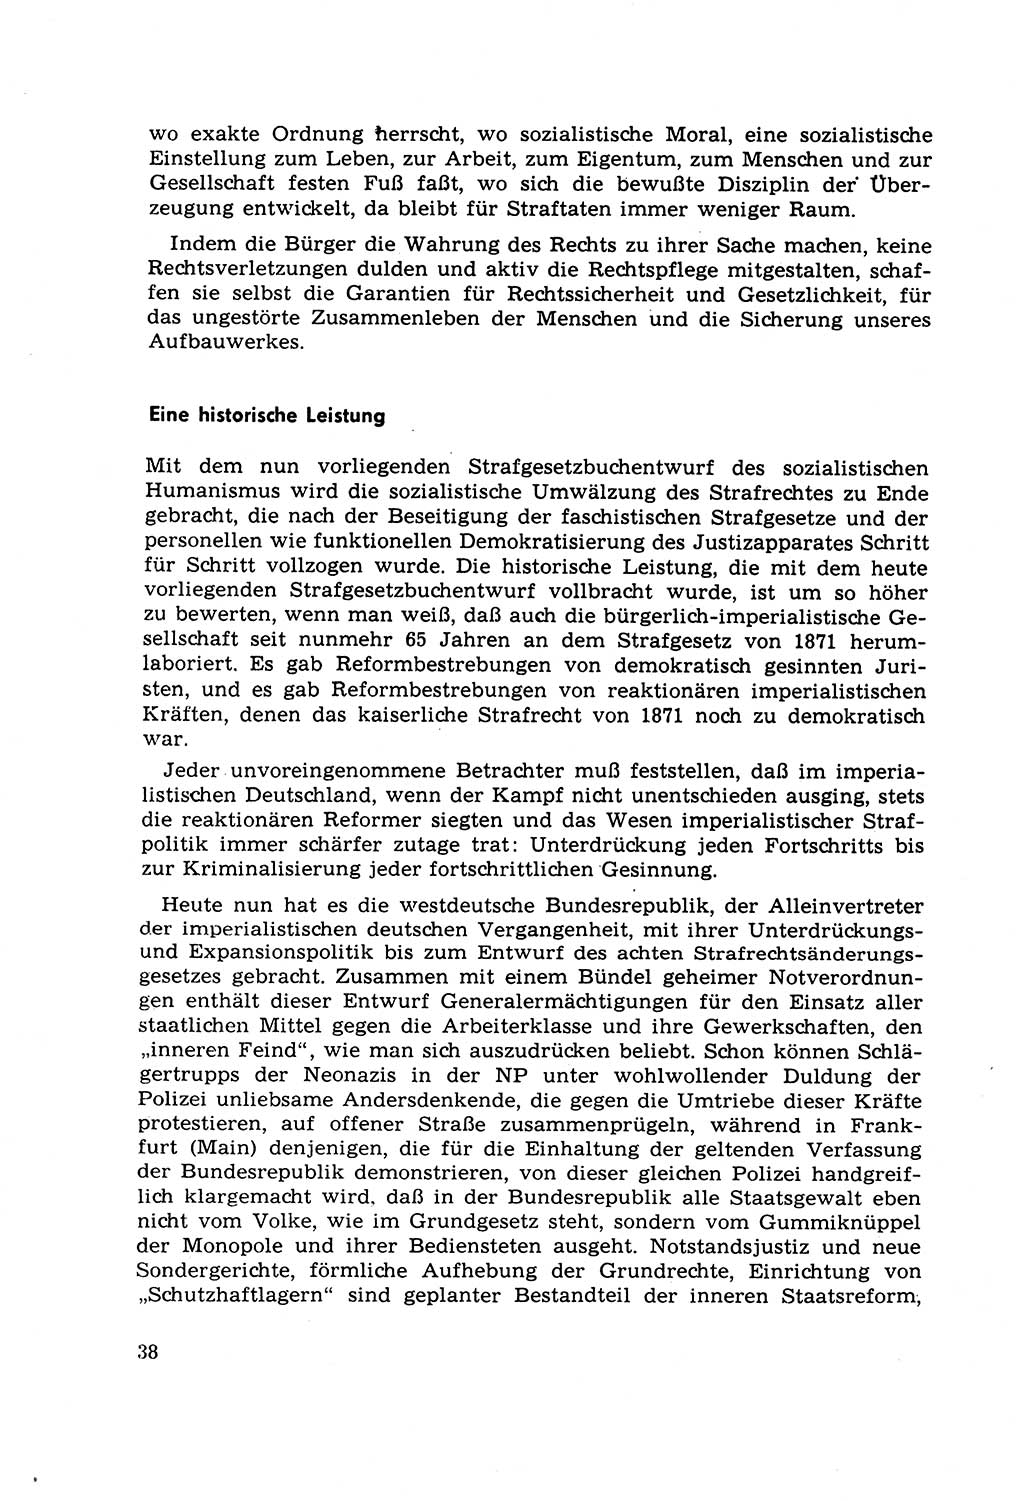 Strafrecht [Deutsche Demokratische Republik (DDR)] 1968, Seite 38 (Strafr. DDR 1968, S. 38)